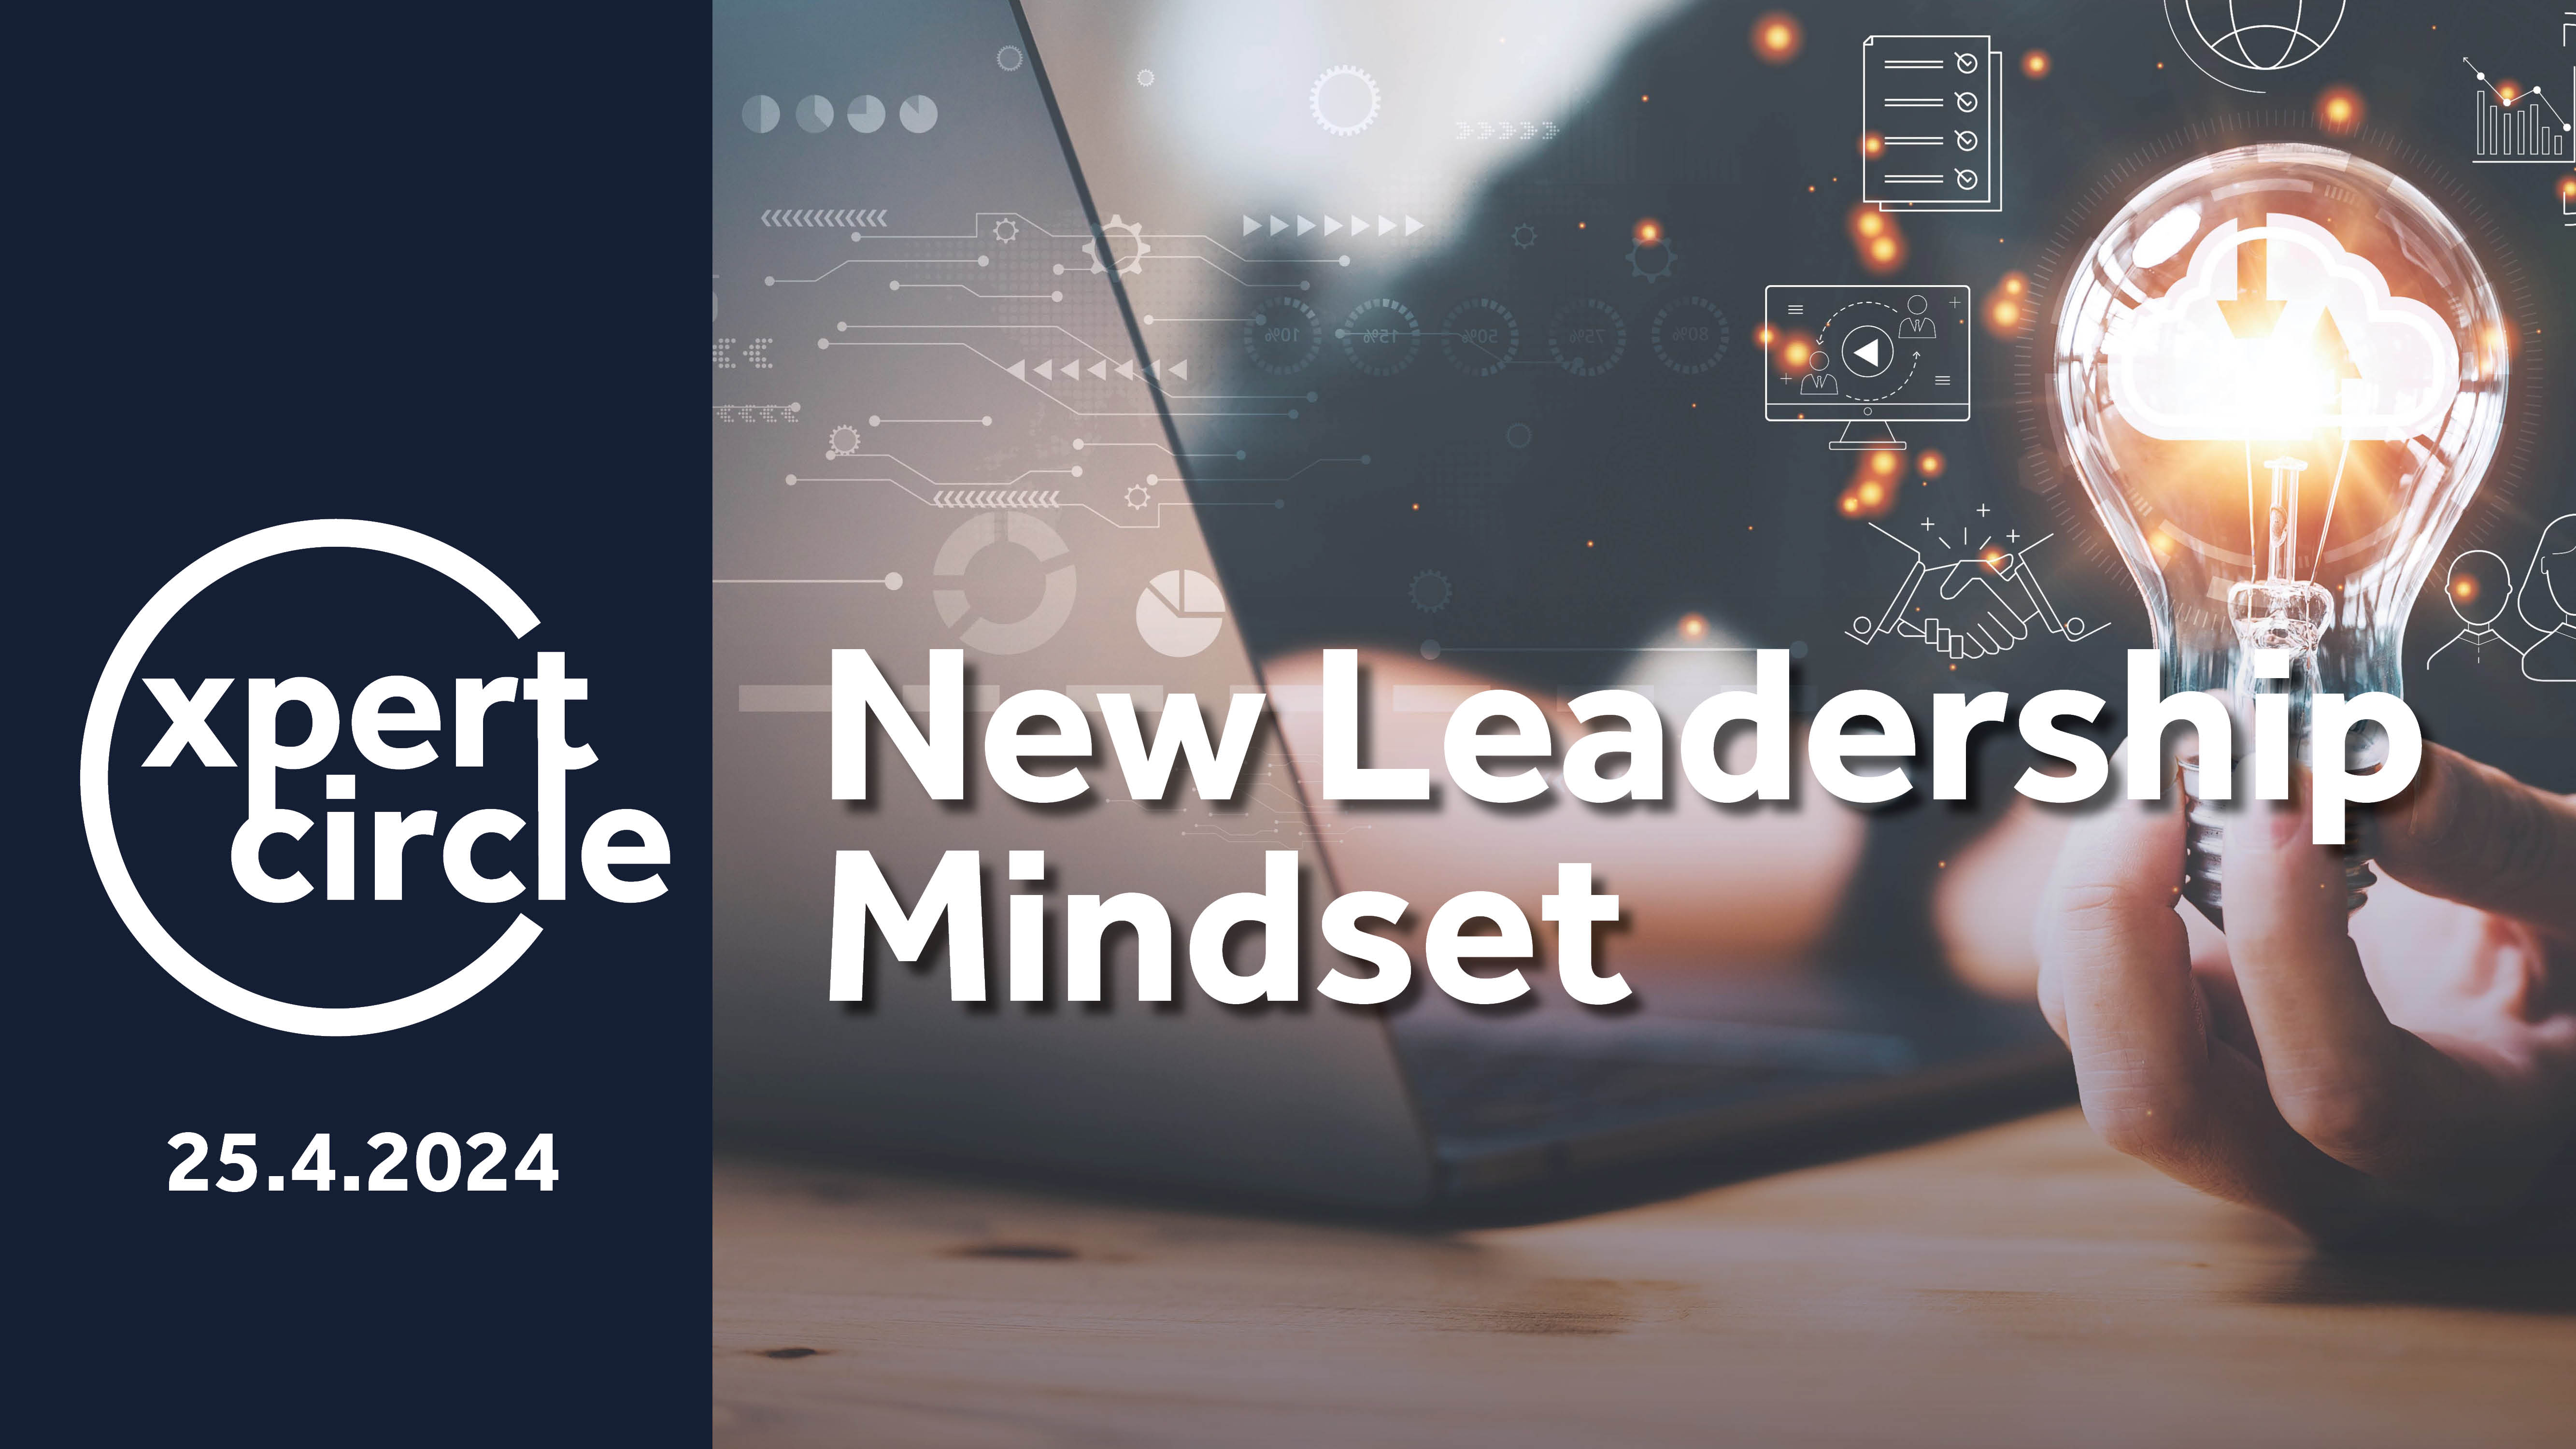 Xpert Circle - New Leadership Mindset: Führung mit Leidenschaft